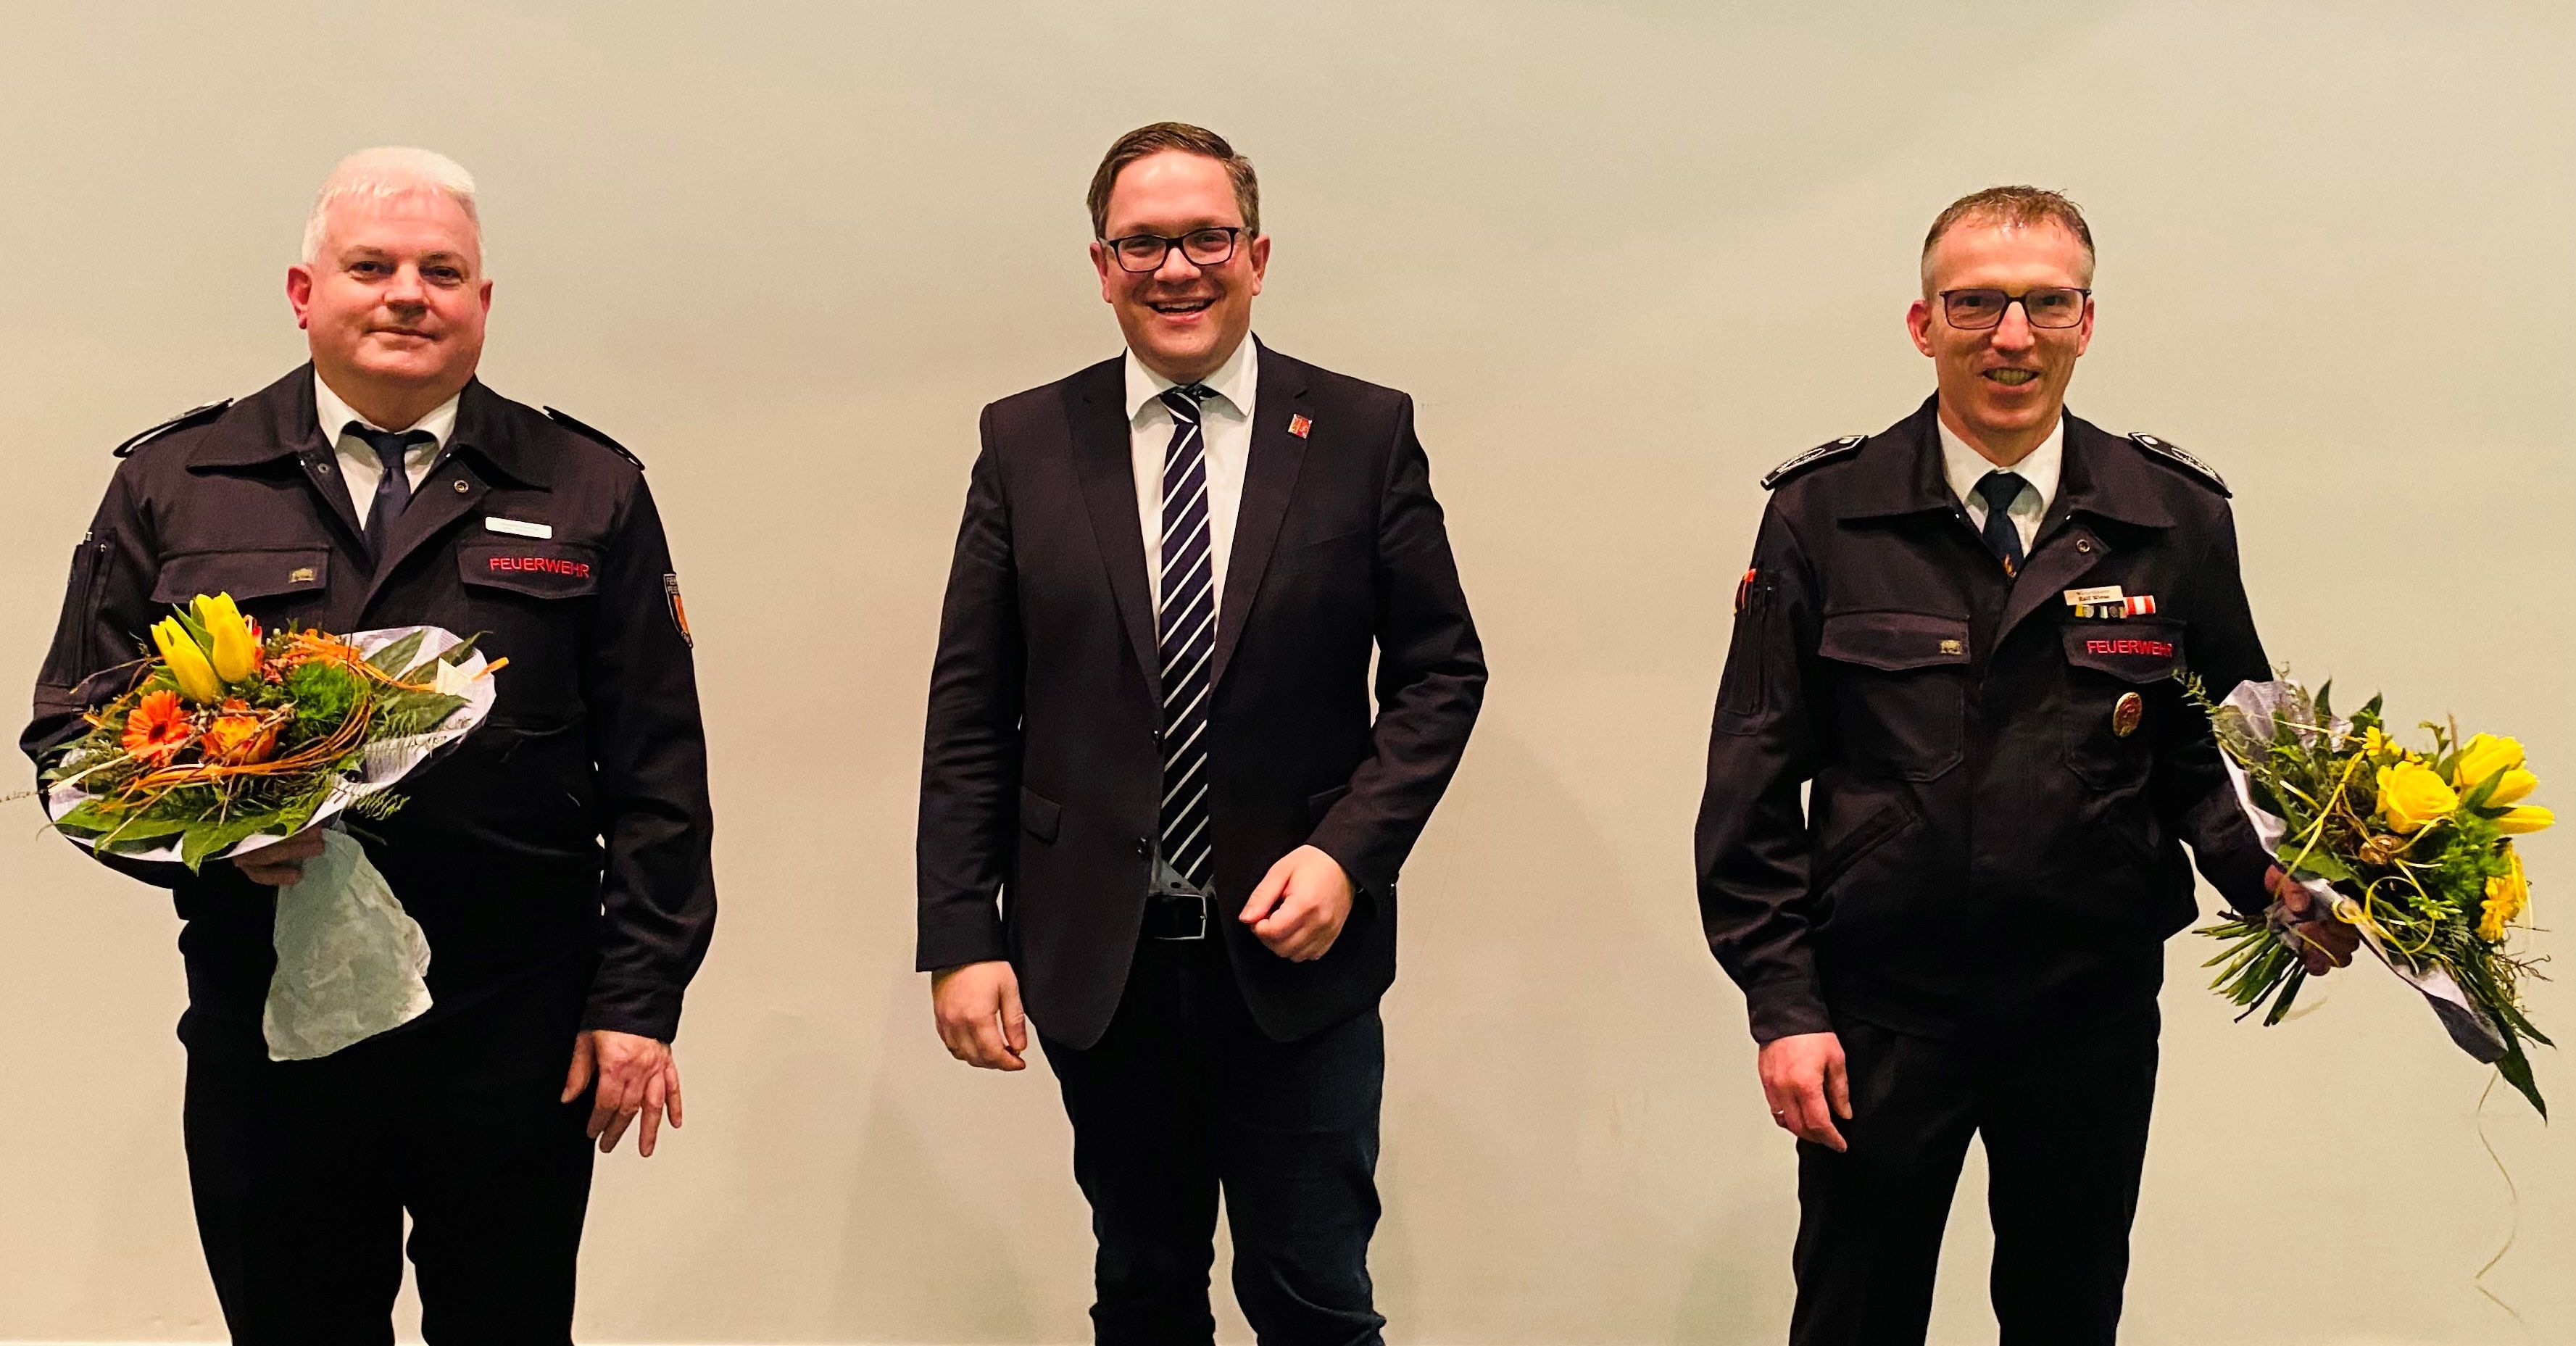 v.l.n.r. Ralf Wiese (Leiter Feuerwehr Erwitte), Hendrik Henneböhl (Bürgermeister), Stephan Köchling (stellvertretender Leiter Feuerwehr Erwitte)